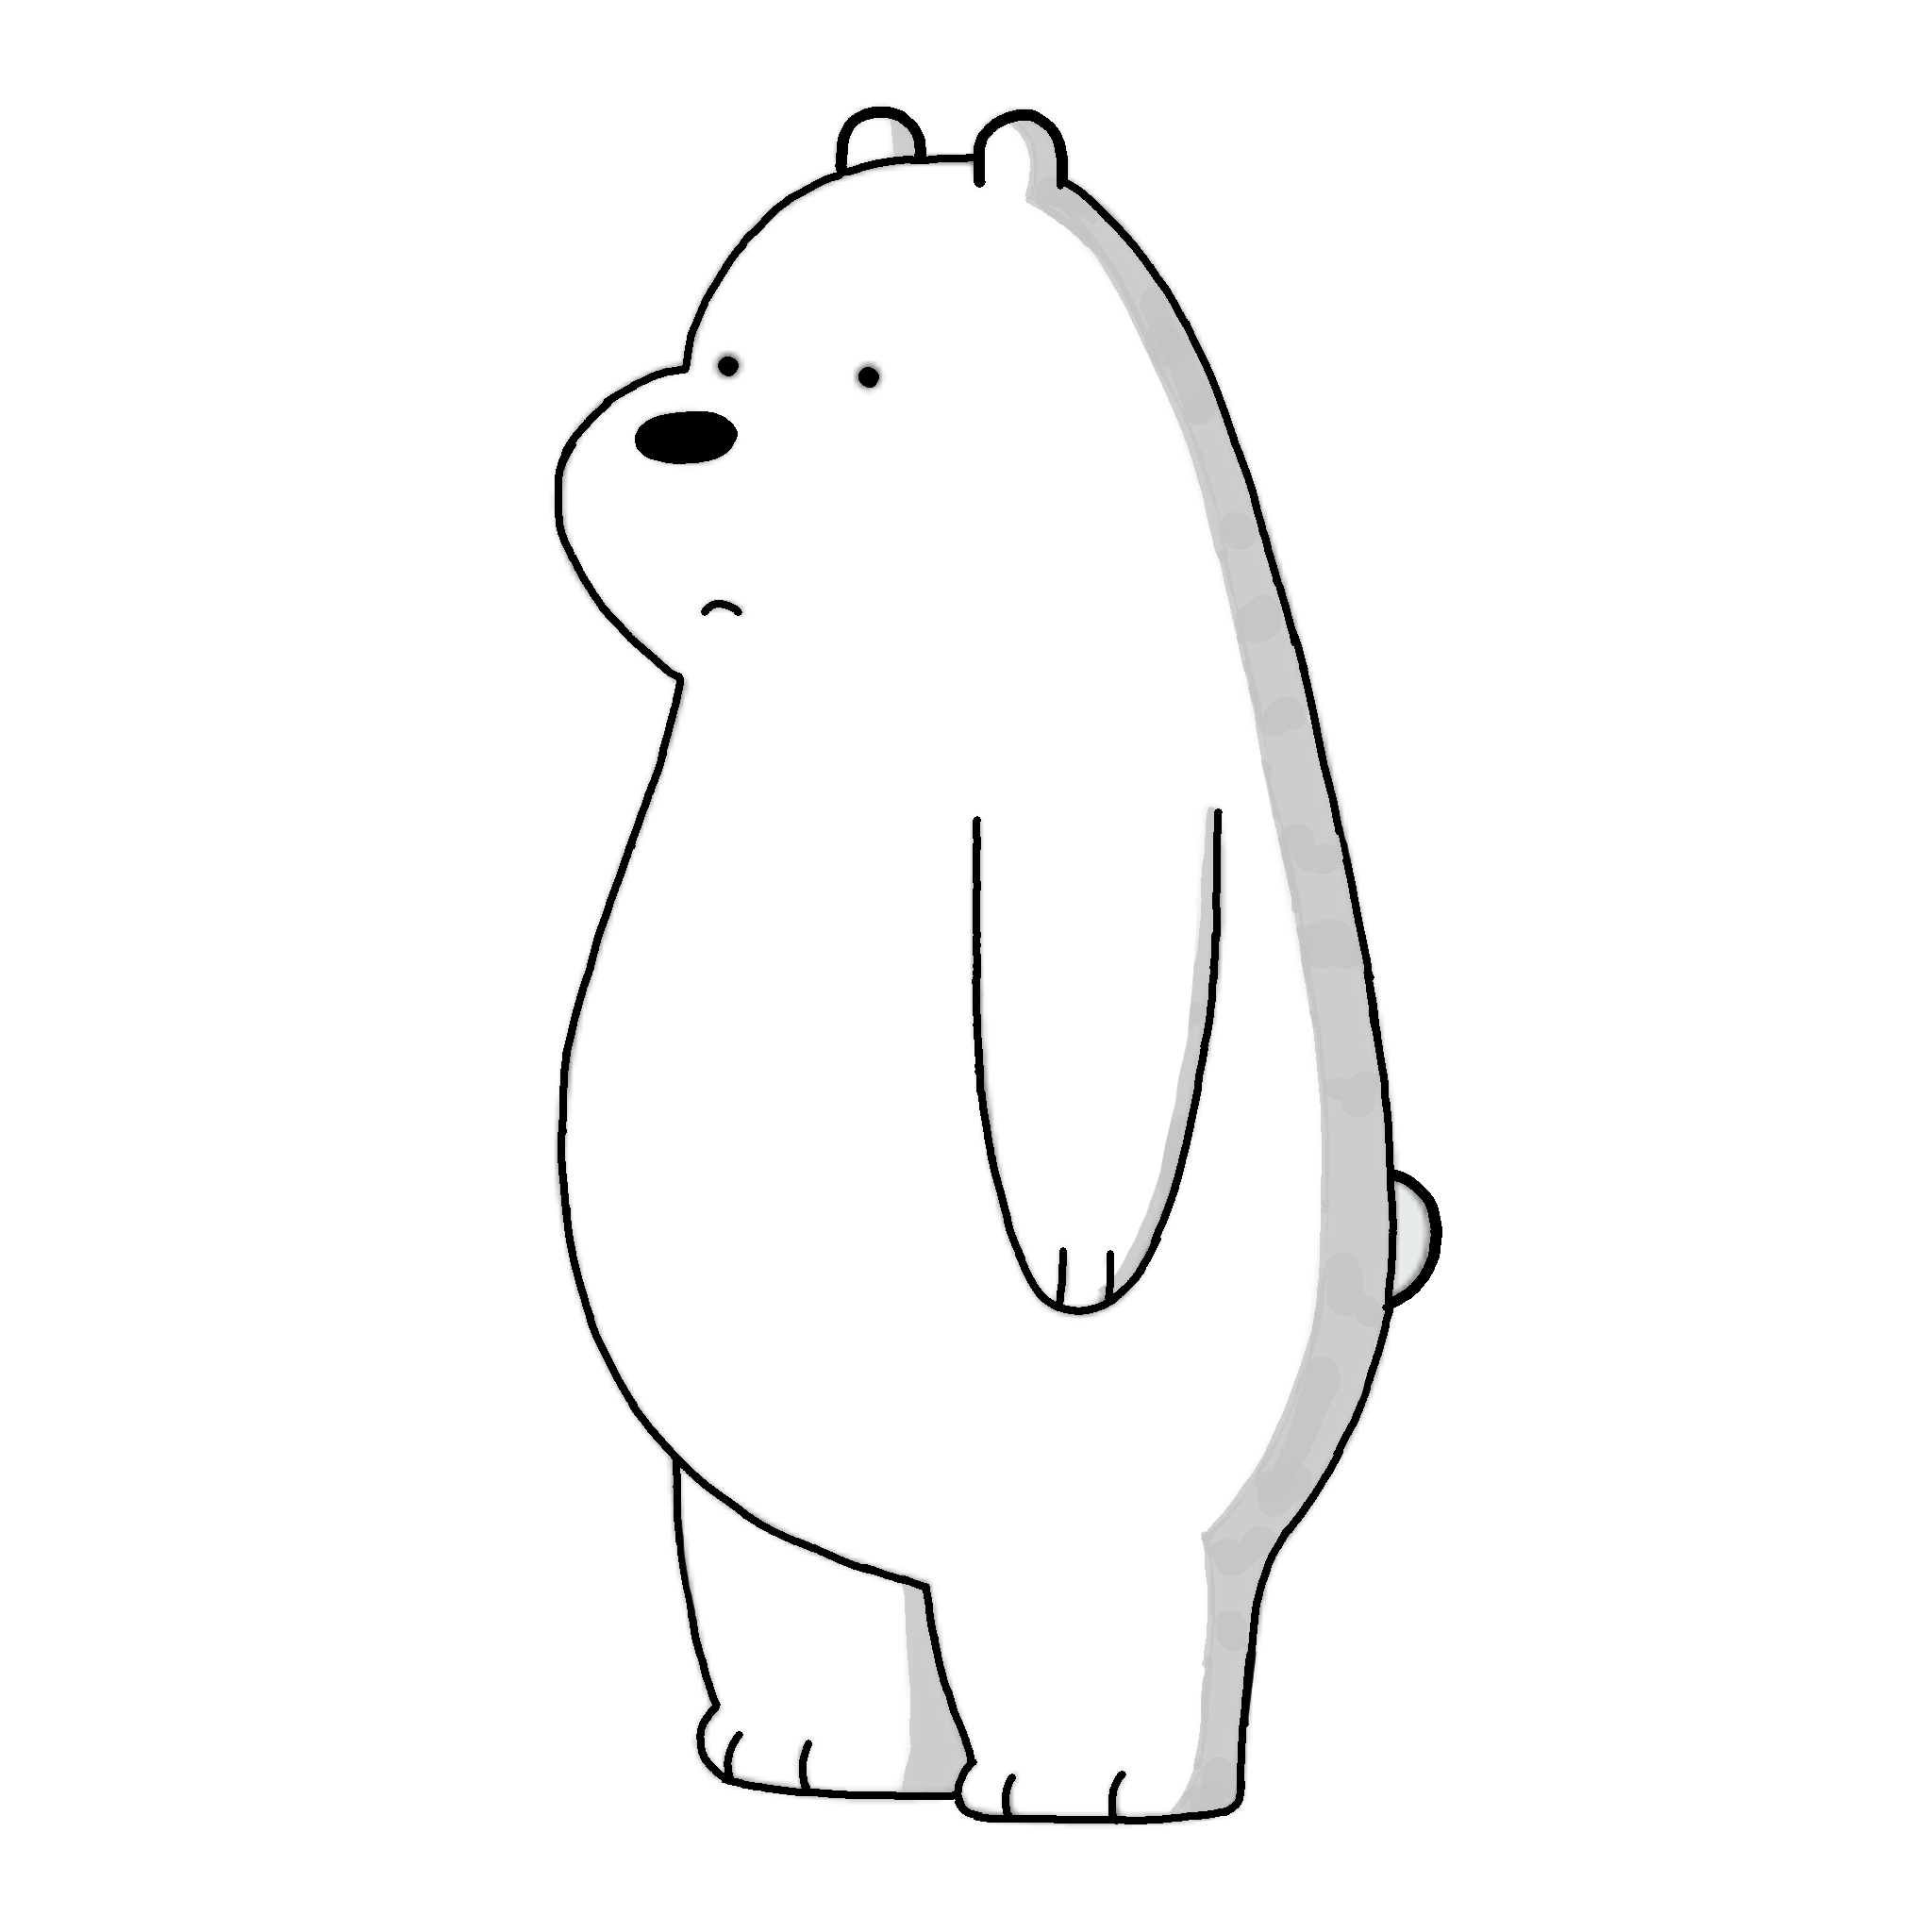 Dibujo de Polar/Ice Bear (We Bare Bears) by AlejandroHBFan on DeviantArt